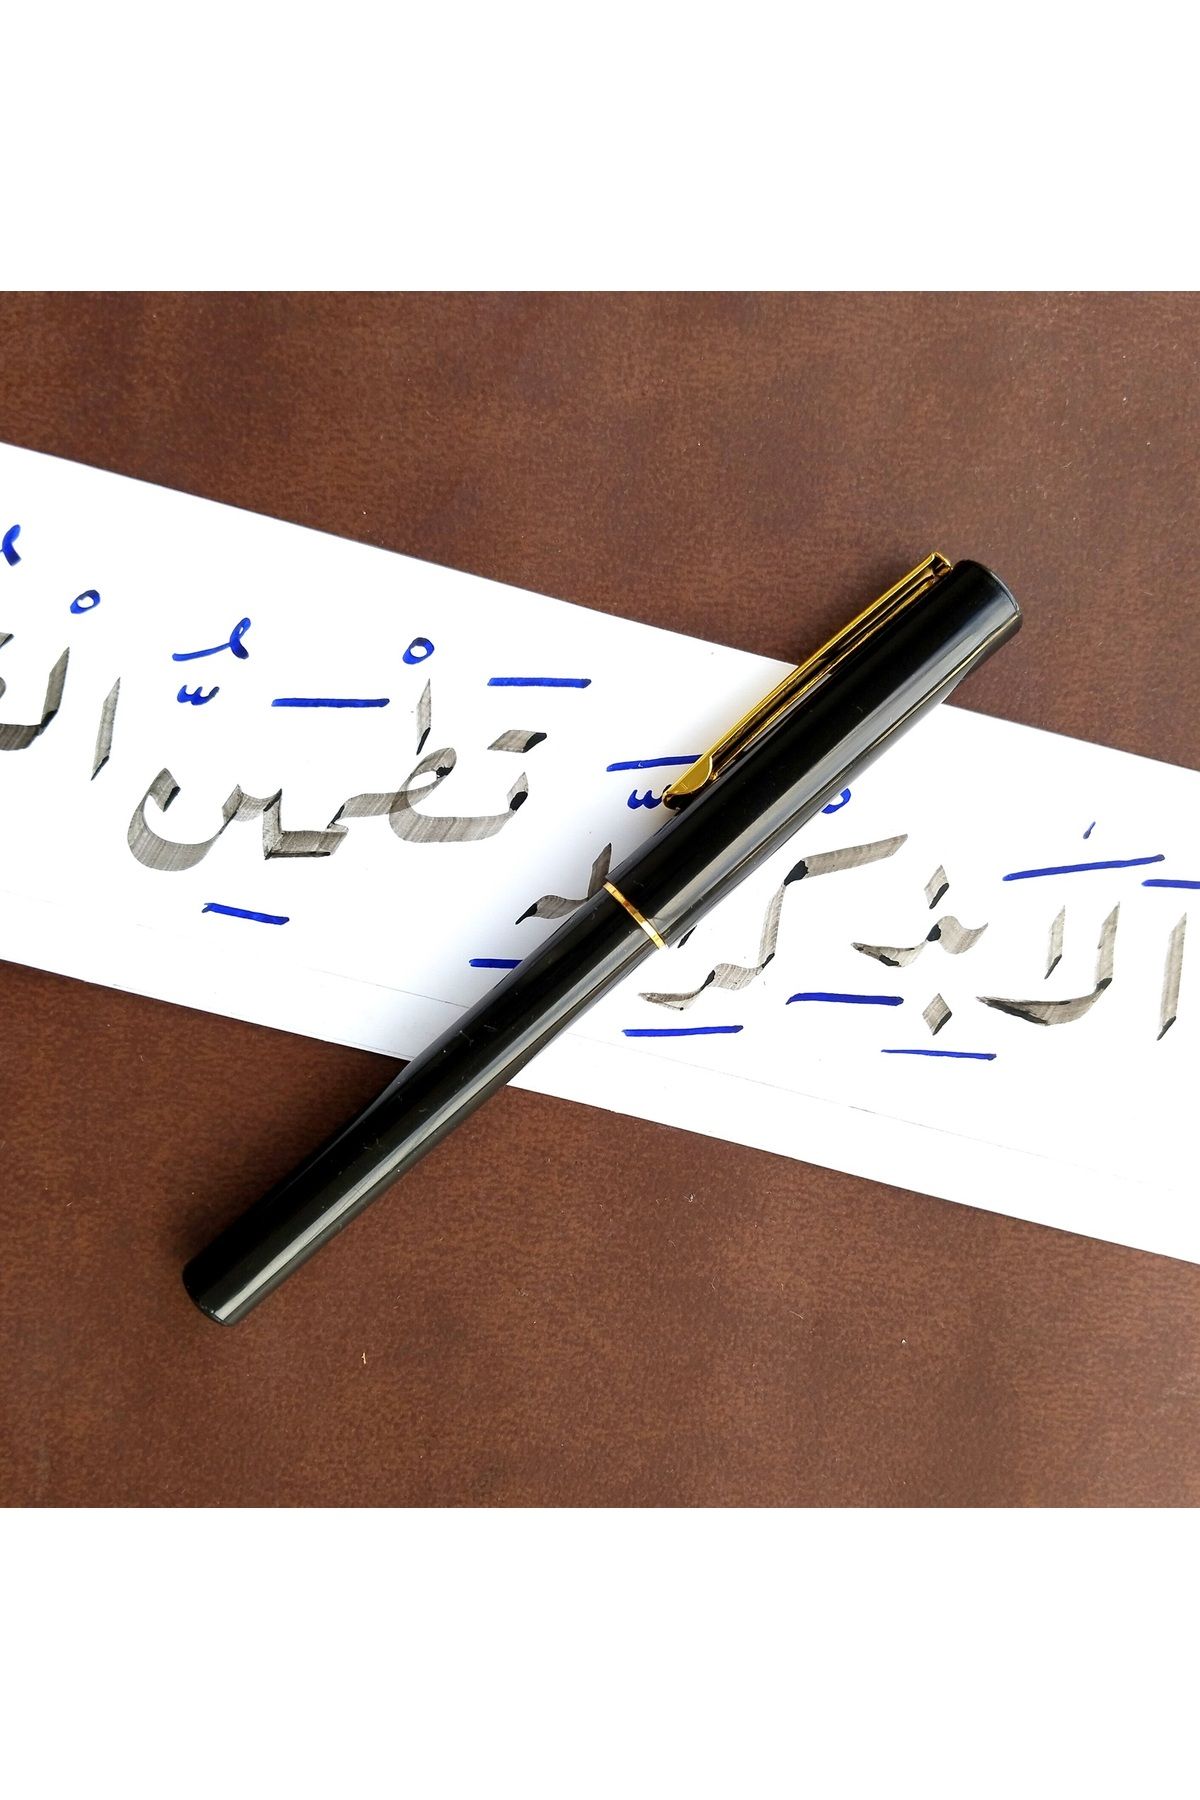 Sanathobi Hat yazı dolma kalem, arapça yazı, osmanlı türkçesi 1.8mm (Z Kesik)